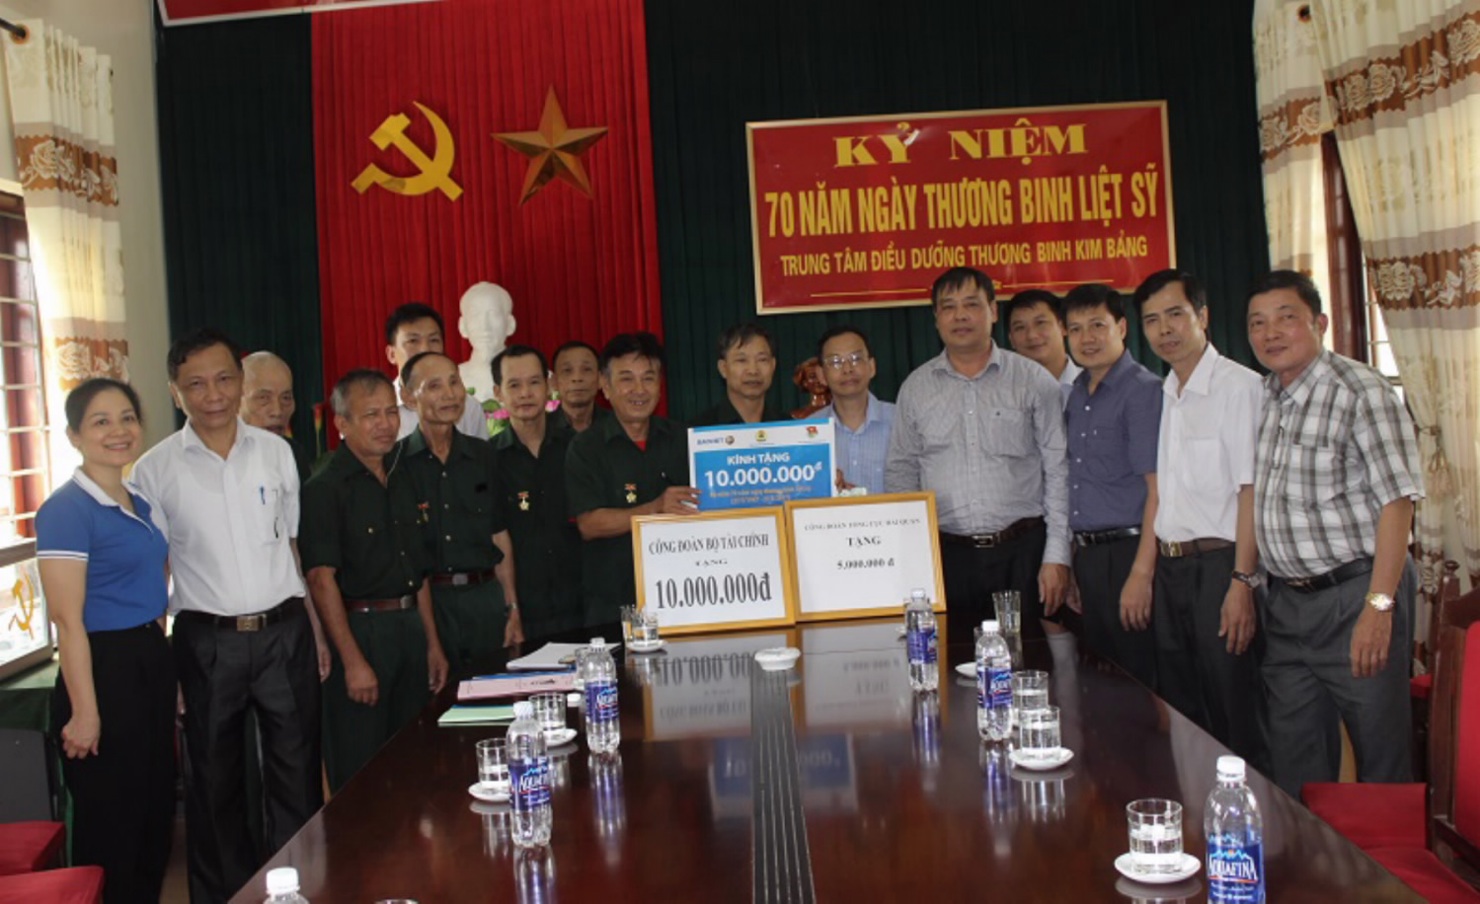 Đại diện Công đoàn Bộ Tài chính, Công đoàn Tổng cục Hải quan và Tập đoàn Bảo Việt thăm và tặng quà cho các thương binh, bệnh binh tại Trung tâm Điều dưỡng Thương binh Kim Bảng (Hà Nam).